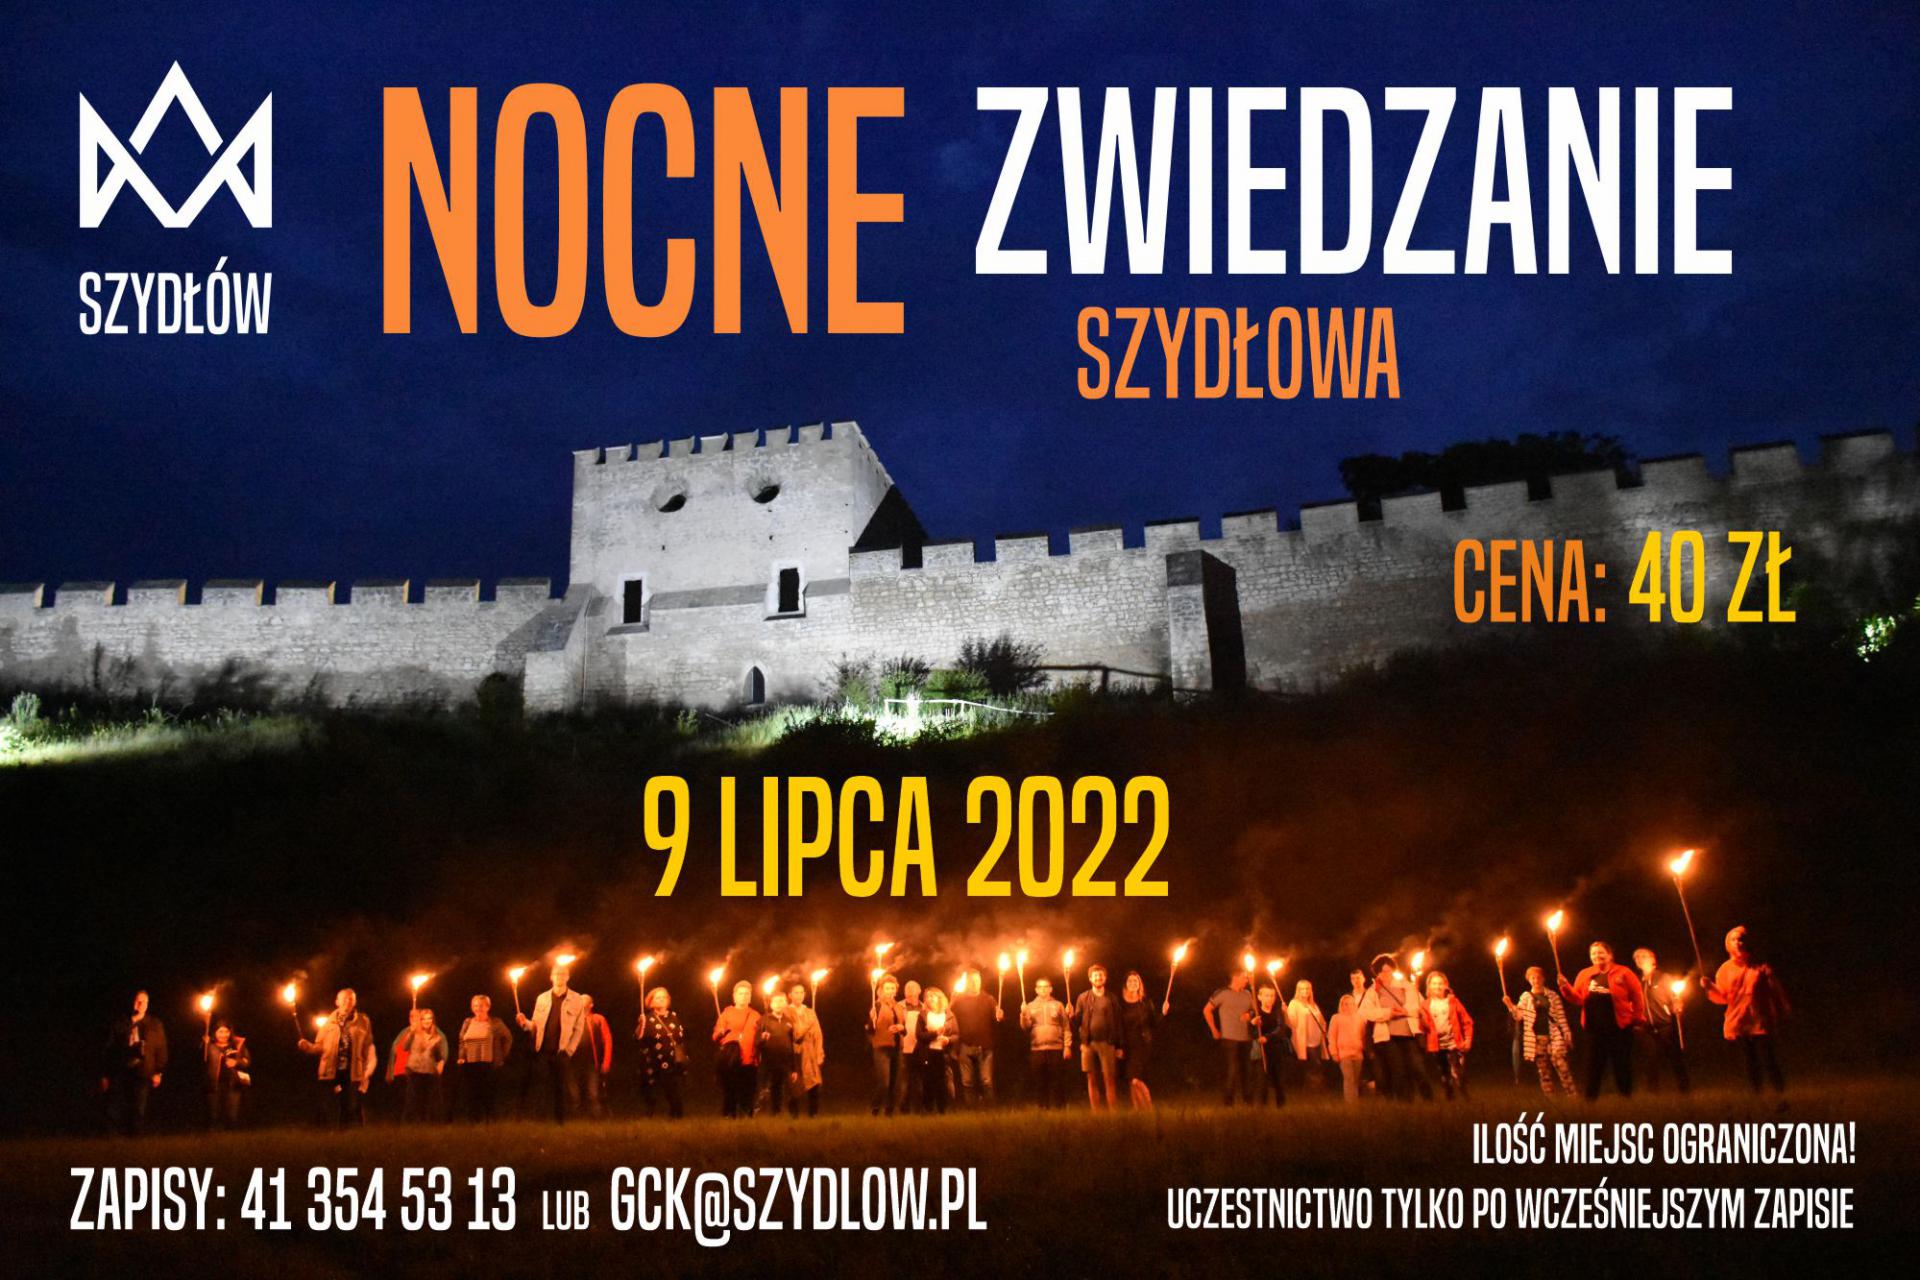 szydlow nocne zwiedzanie 2022 plakat